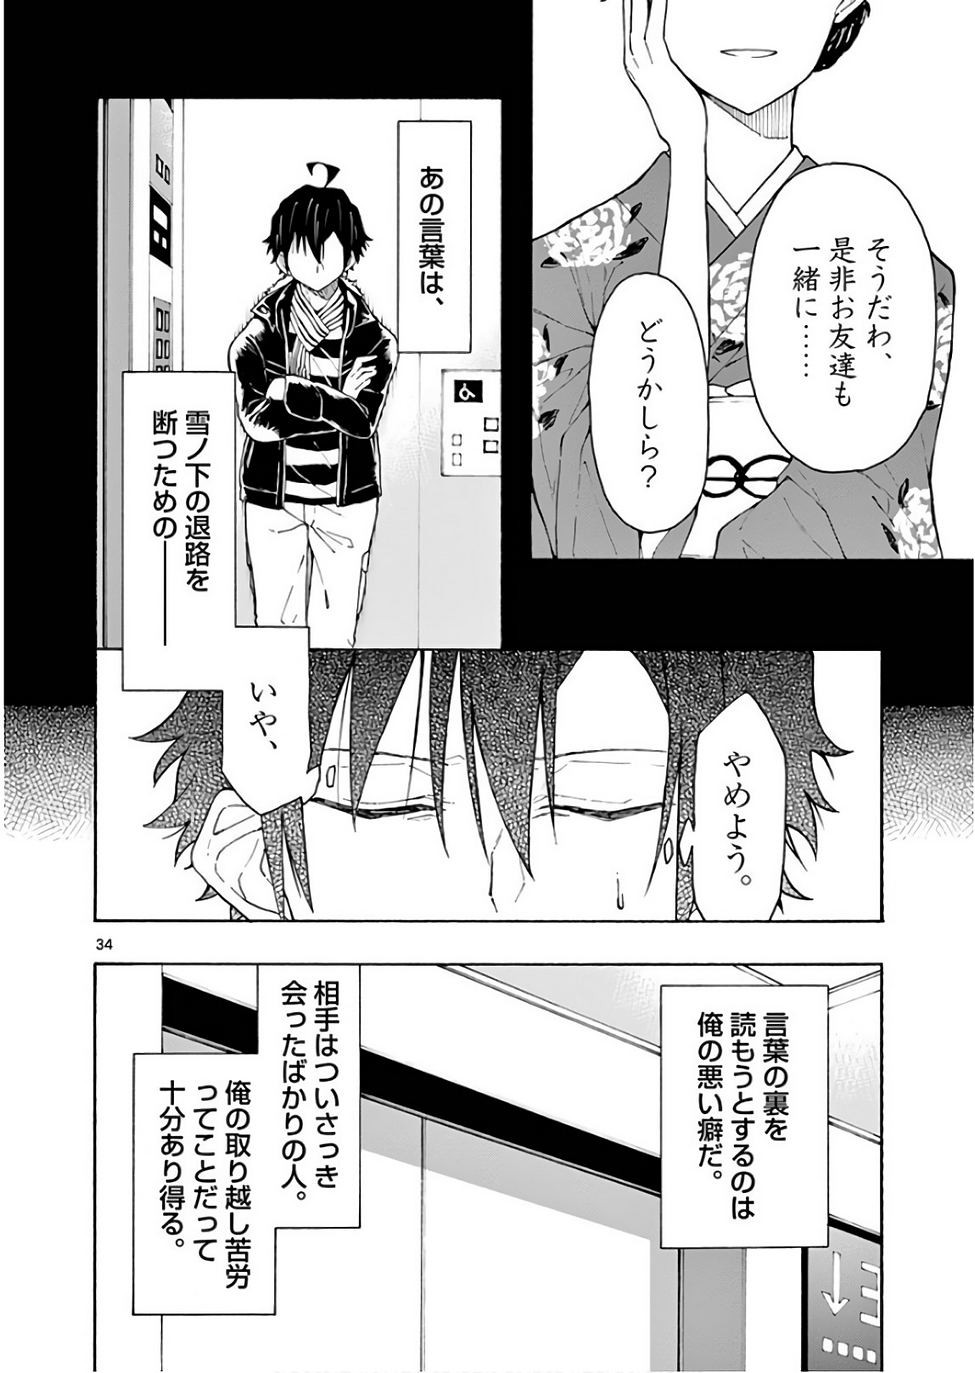 Yahari Ore no Seishun Rabukome wa Machigatte Iru. @ Comic - Chapter 74 - Page 34